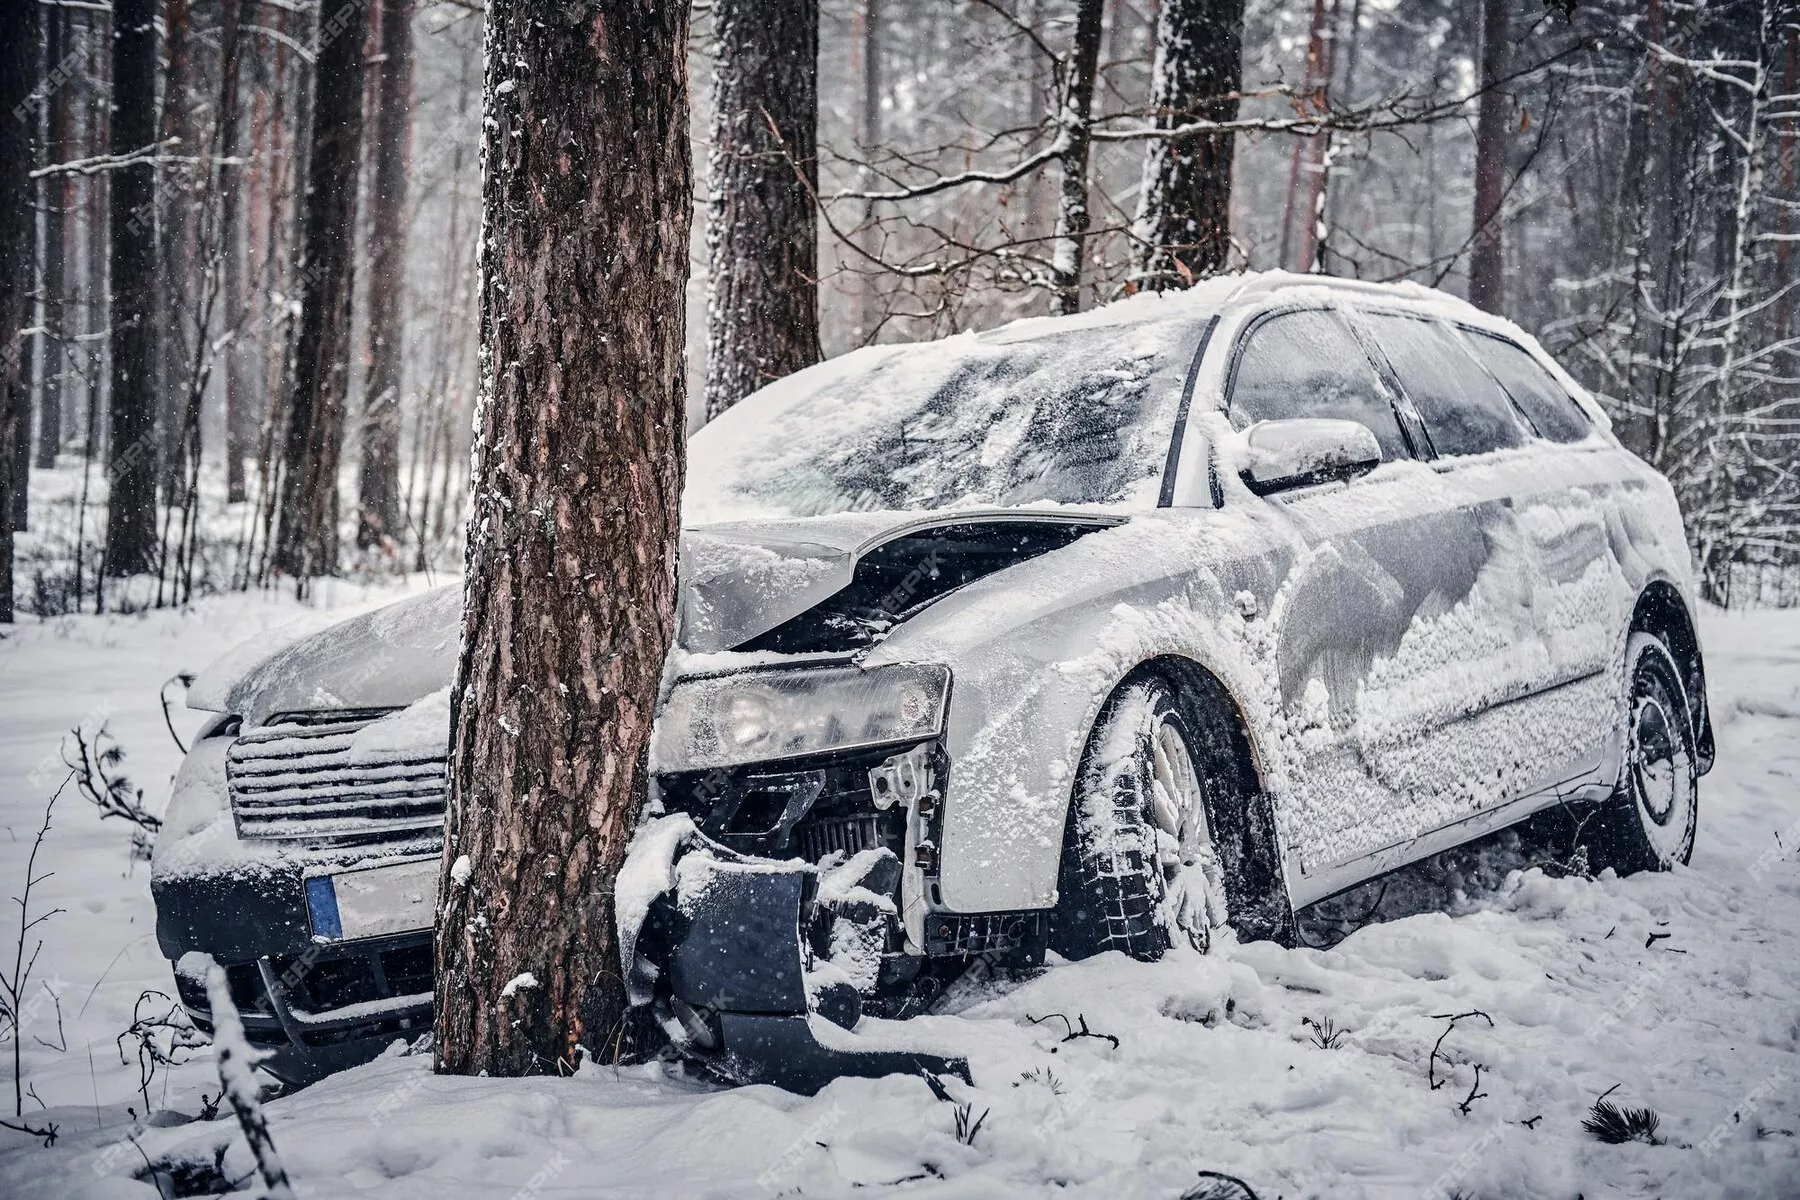 s príchodom zimy nastupuje obdobie zvýšeného počtu dopravných nehôd a škodových udalostí